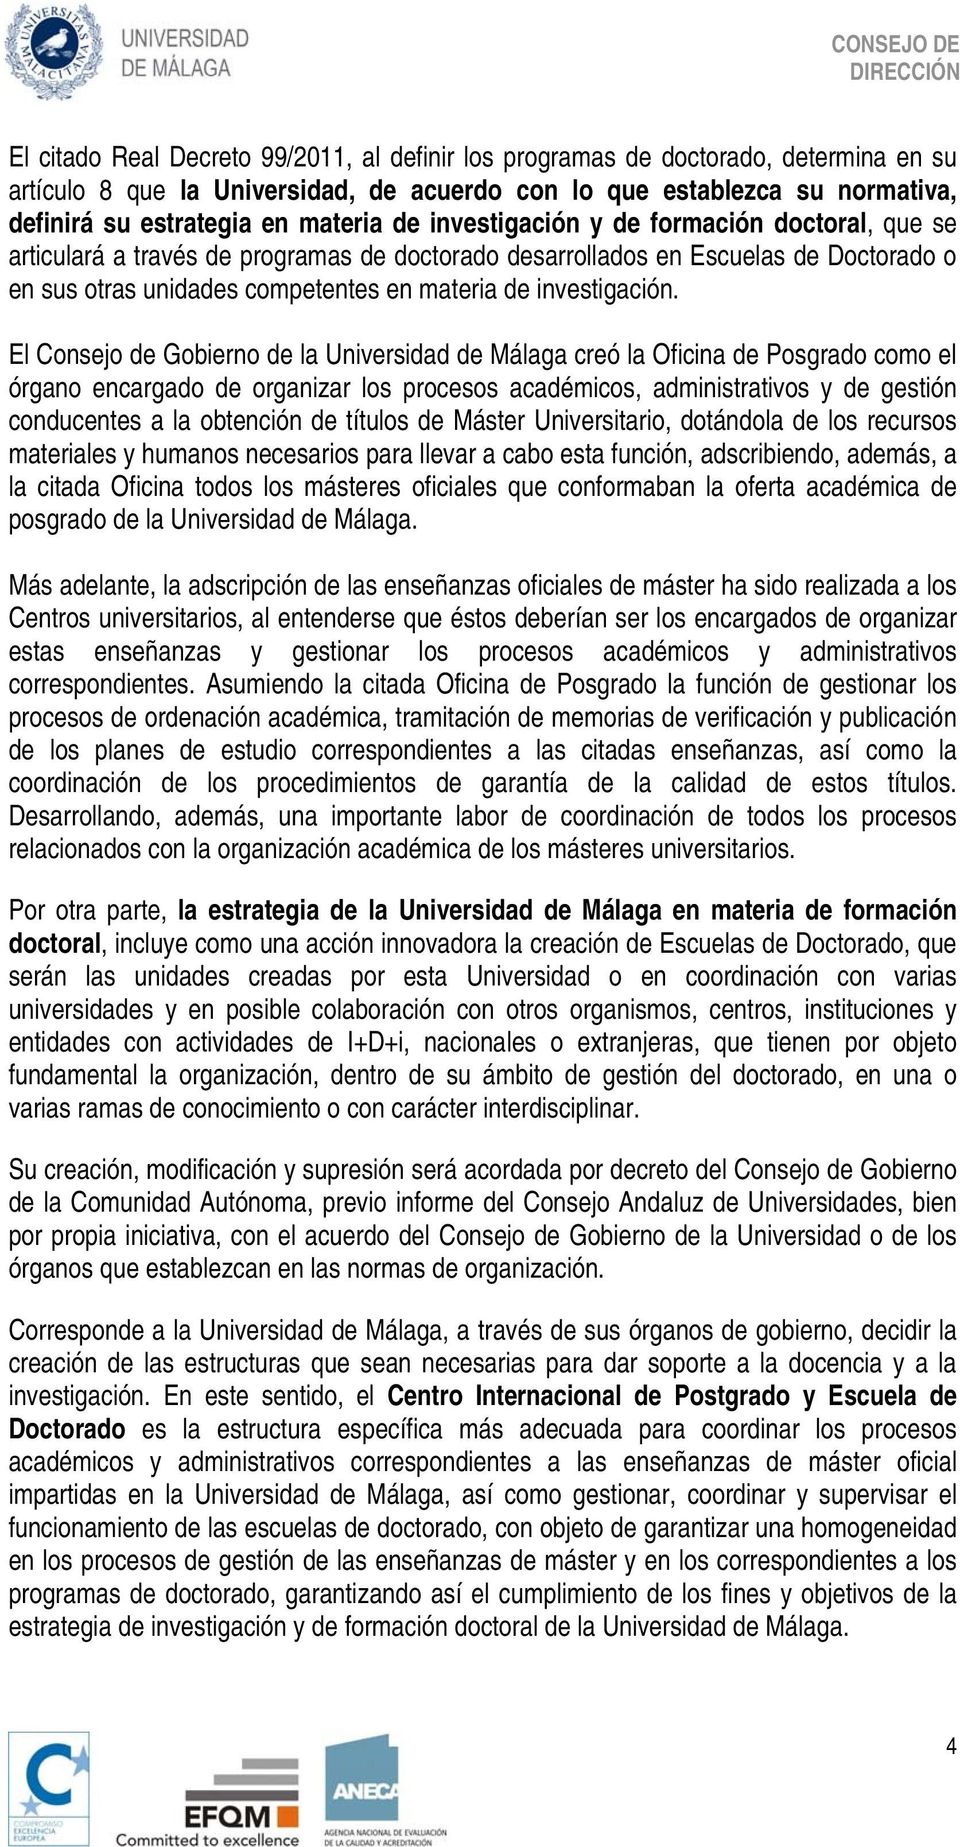 El Consejo de Gobierno de la Universidad de Málaga creó la Oficina de Posgrado como el órgano encargado de organizar los procesos académicos, administrativos y de gestión conducentes a la obtención